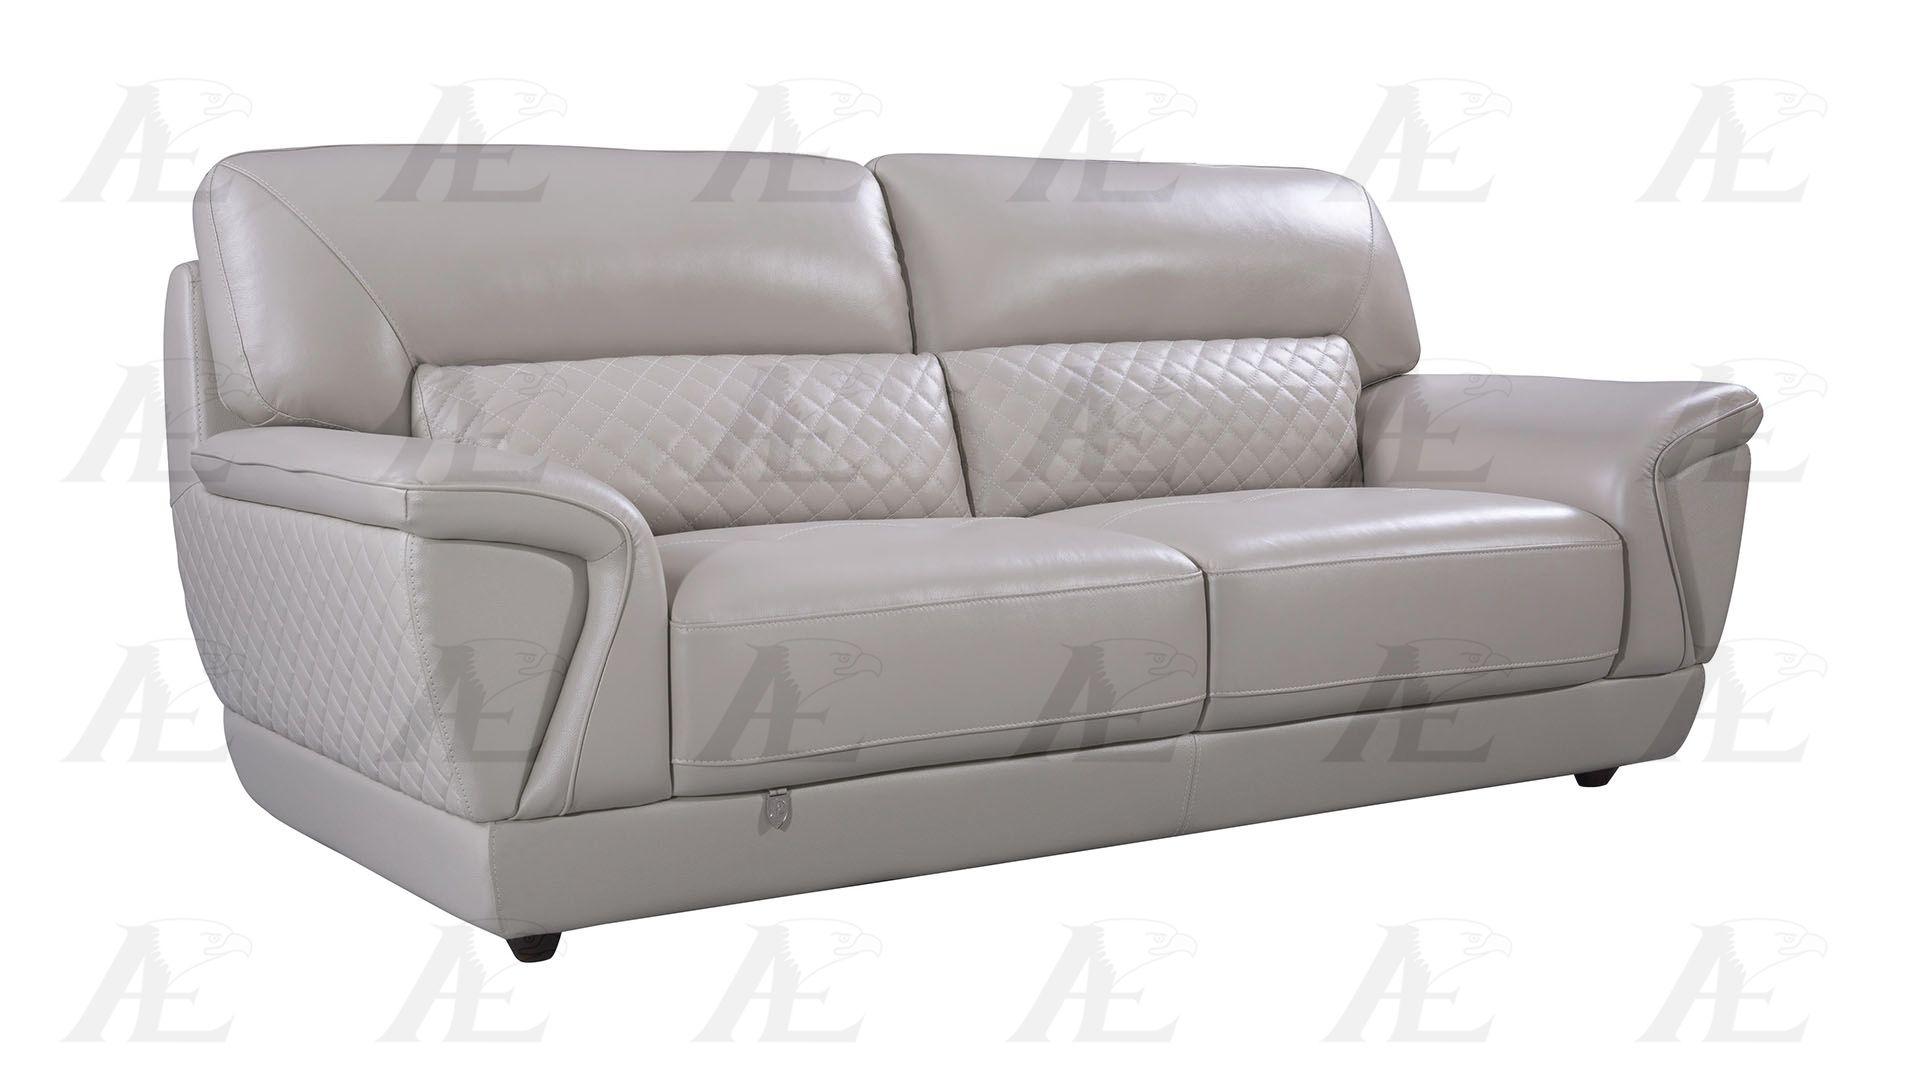 

    
EK099-LG-SF Sofa
